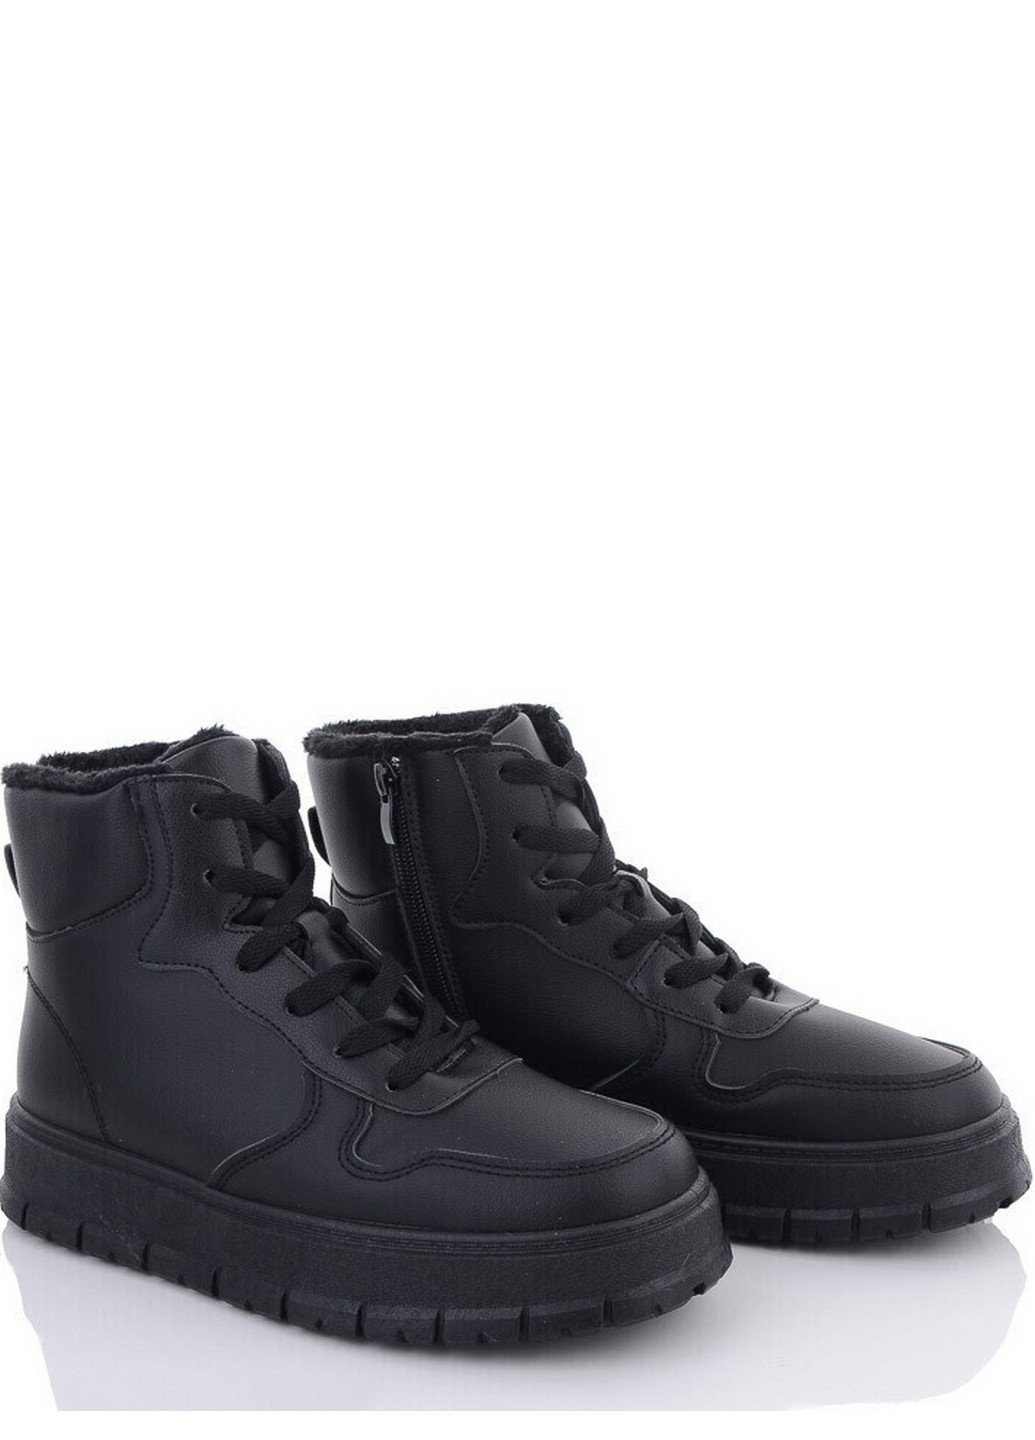 Черные зимние зимние ботинки b11-1 Stilli